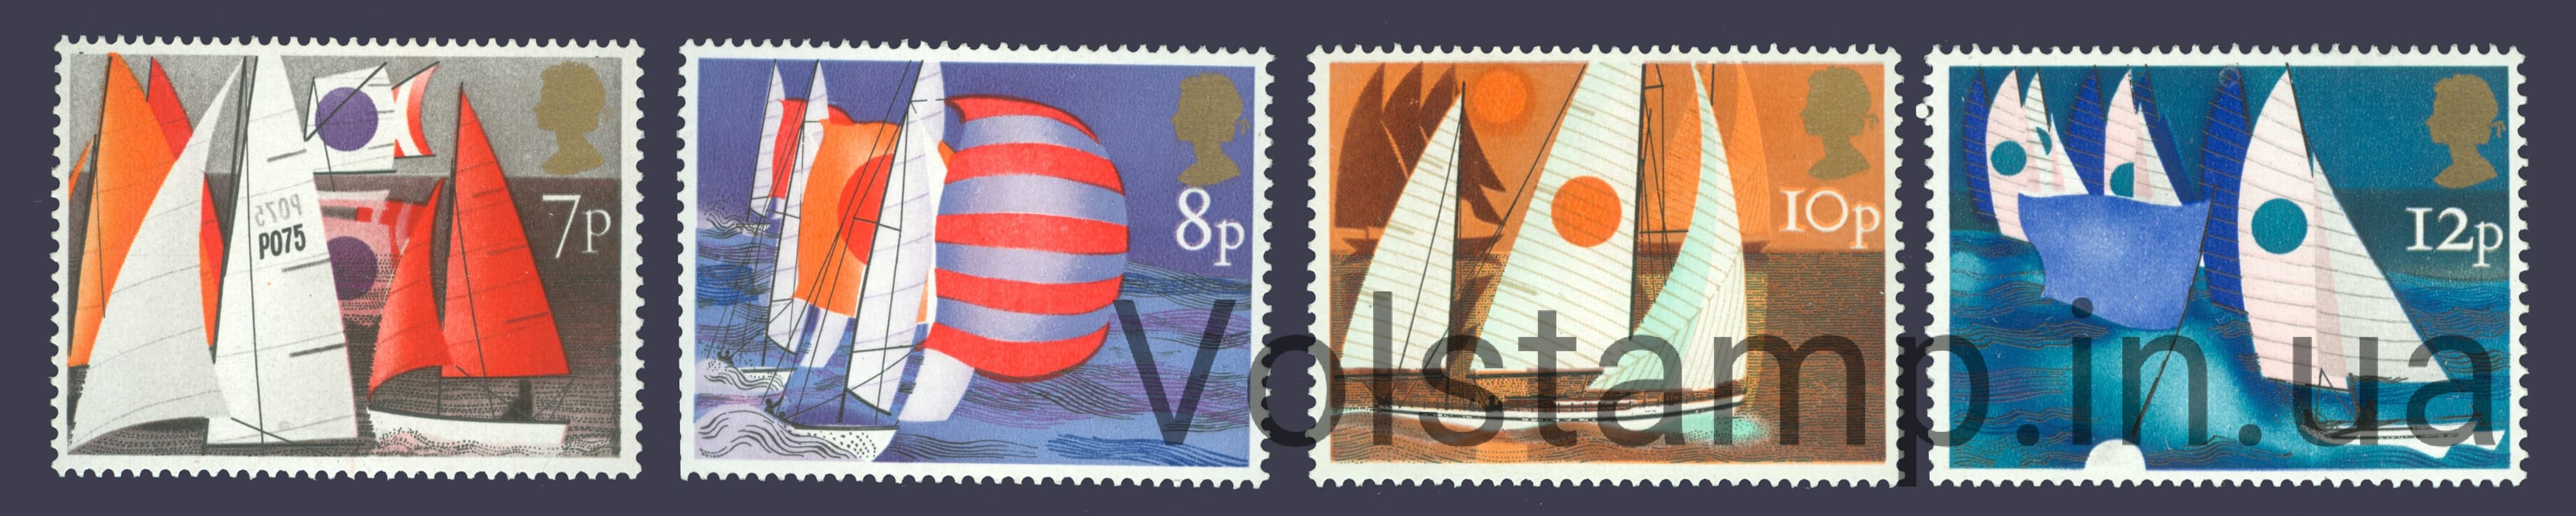 1975 Великобритания Серия марок (Парусный спорт) MNH №678-681